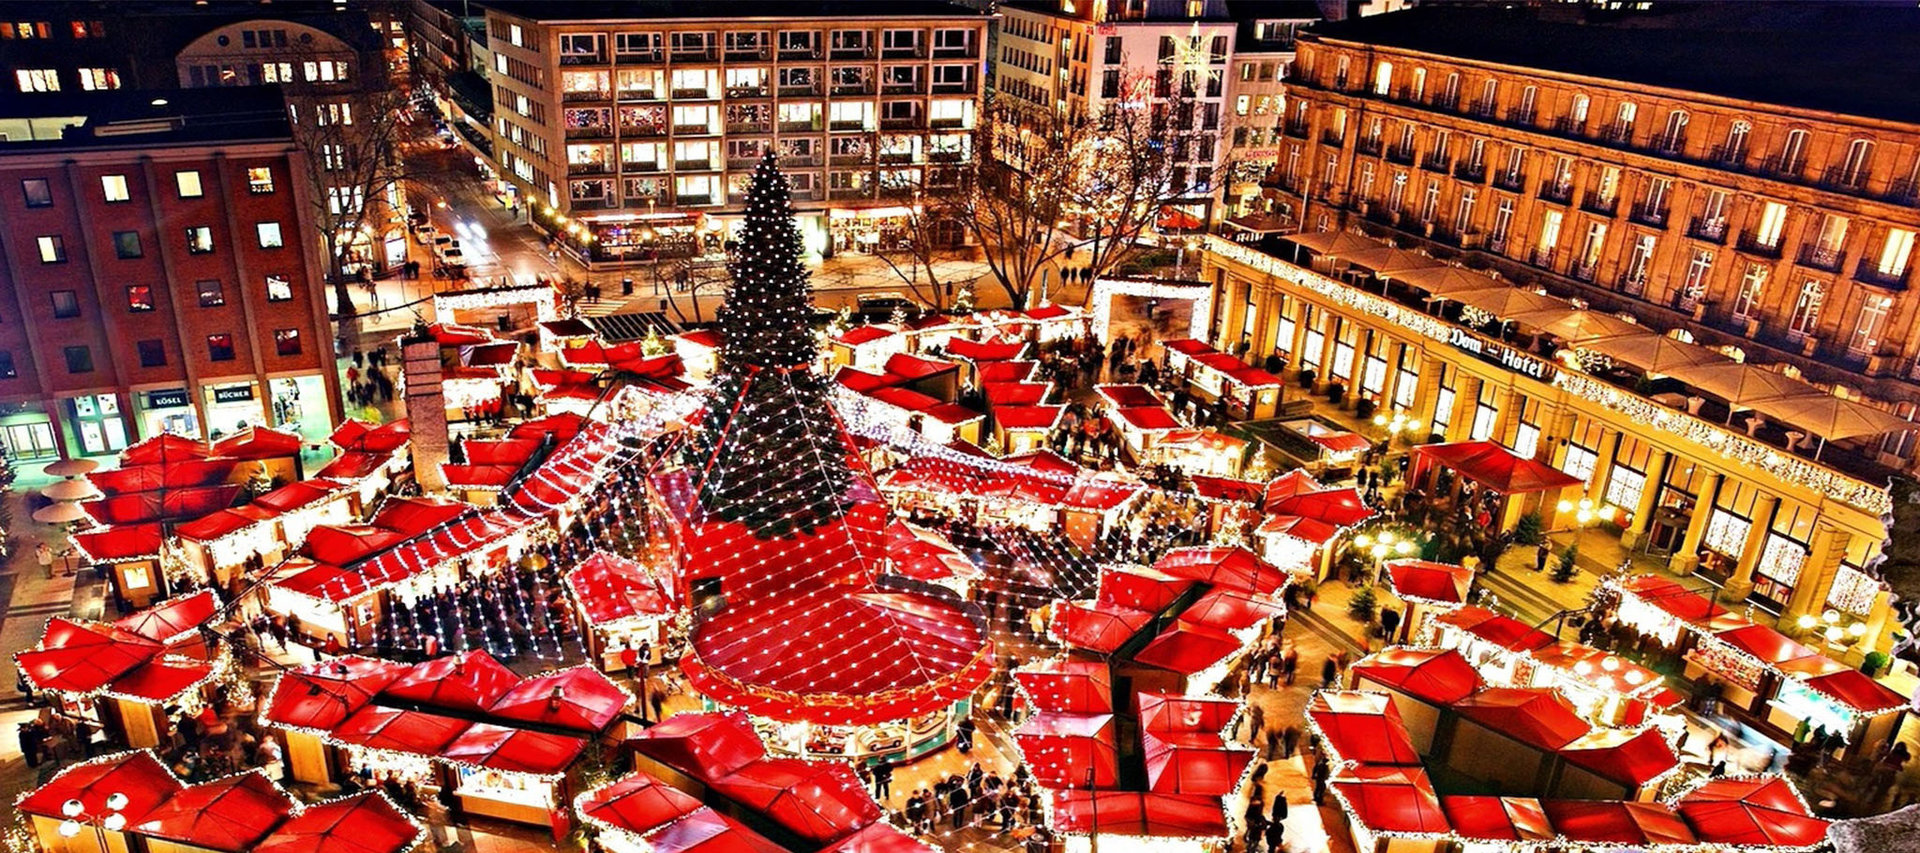 Nhộn nhịp không khí Giáng sinh ở những khu chợ nổi tiếng nhất châu Âu